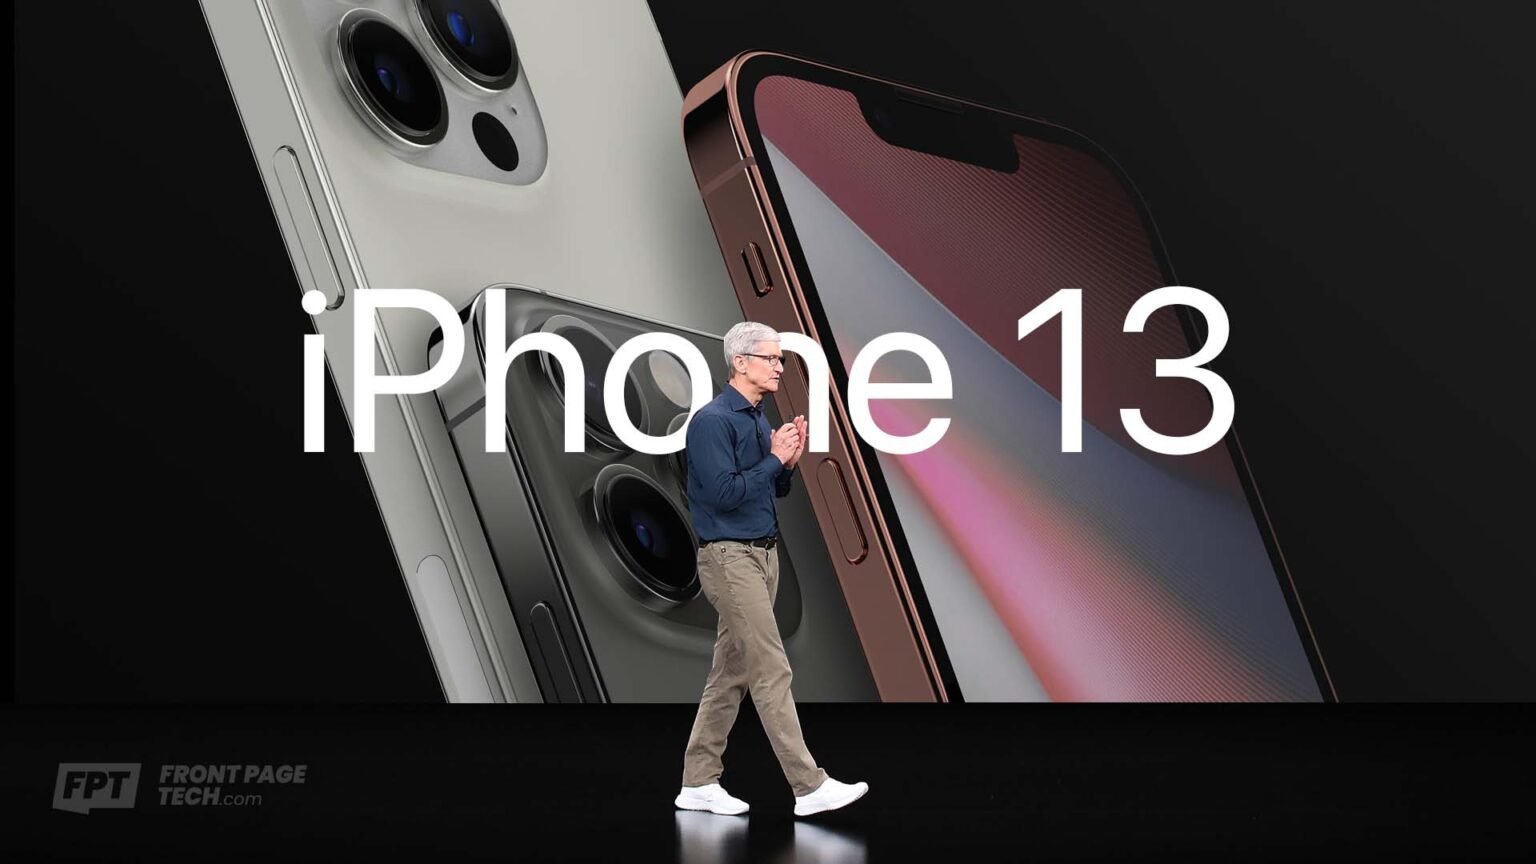 [คาดการณ์ราคา] Apple เตรียมจัดงานเปิดตัว iPhone 13 วันที่ 14 ก.ย.นี้ !! พร้อมเปิดขายทั่วโลก 24 ก.ย.